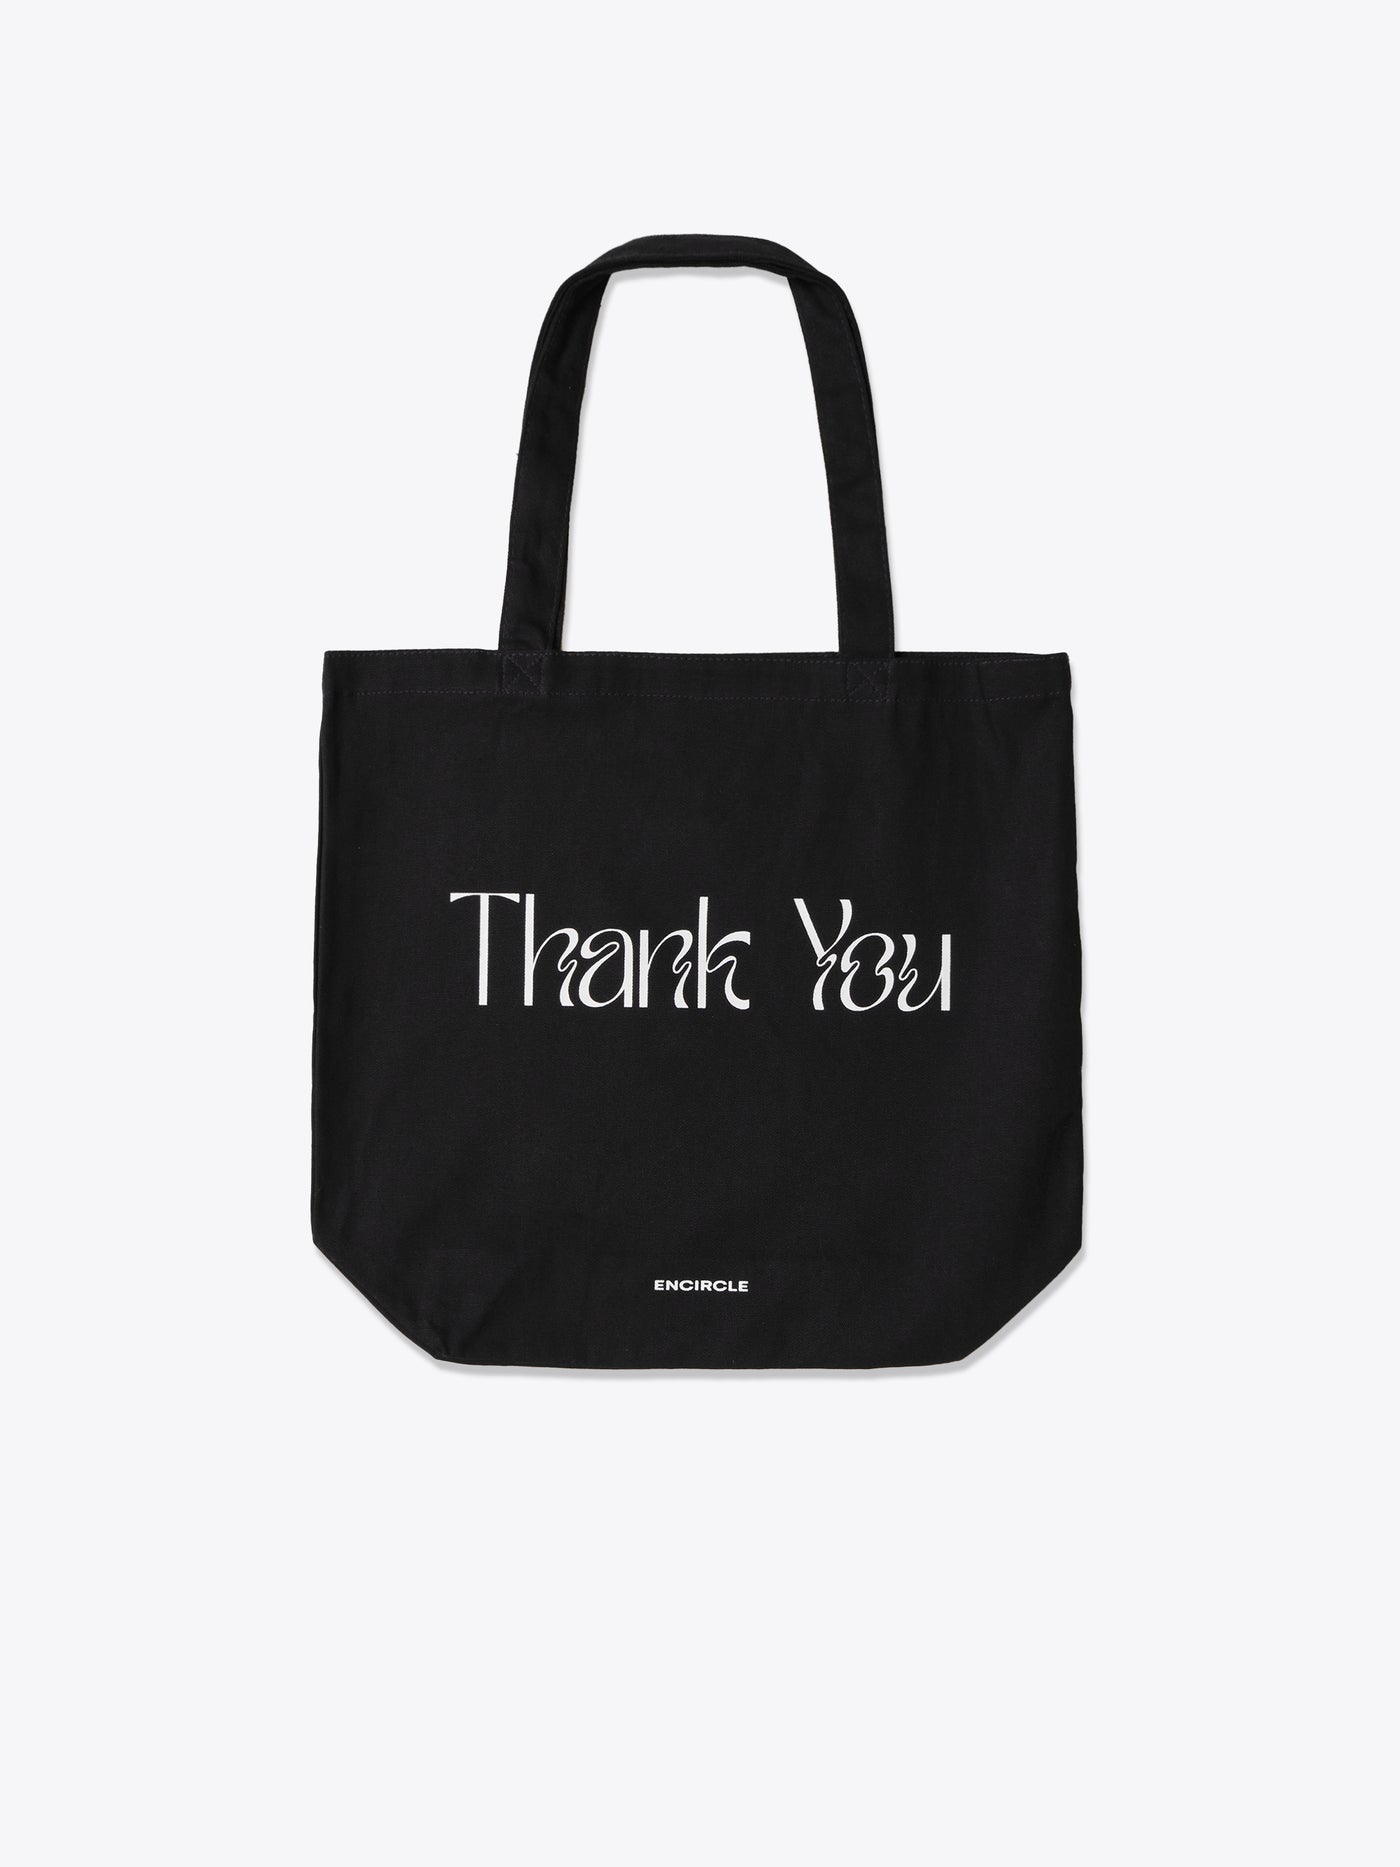 Thank you bag